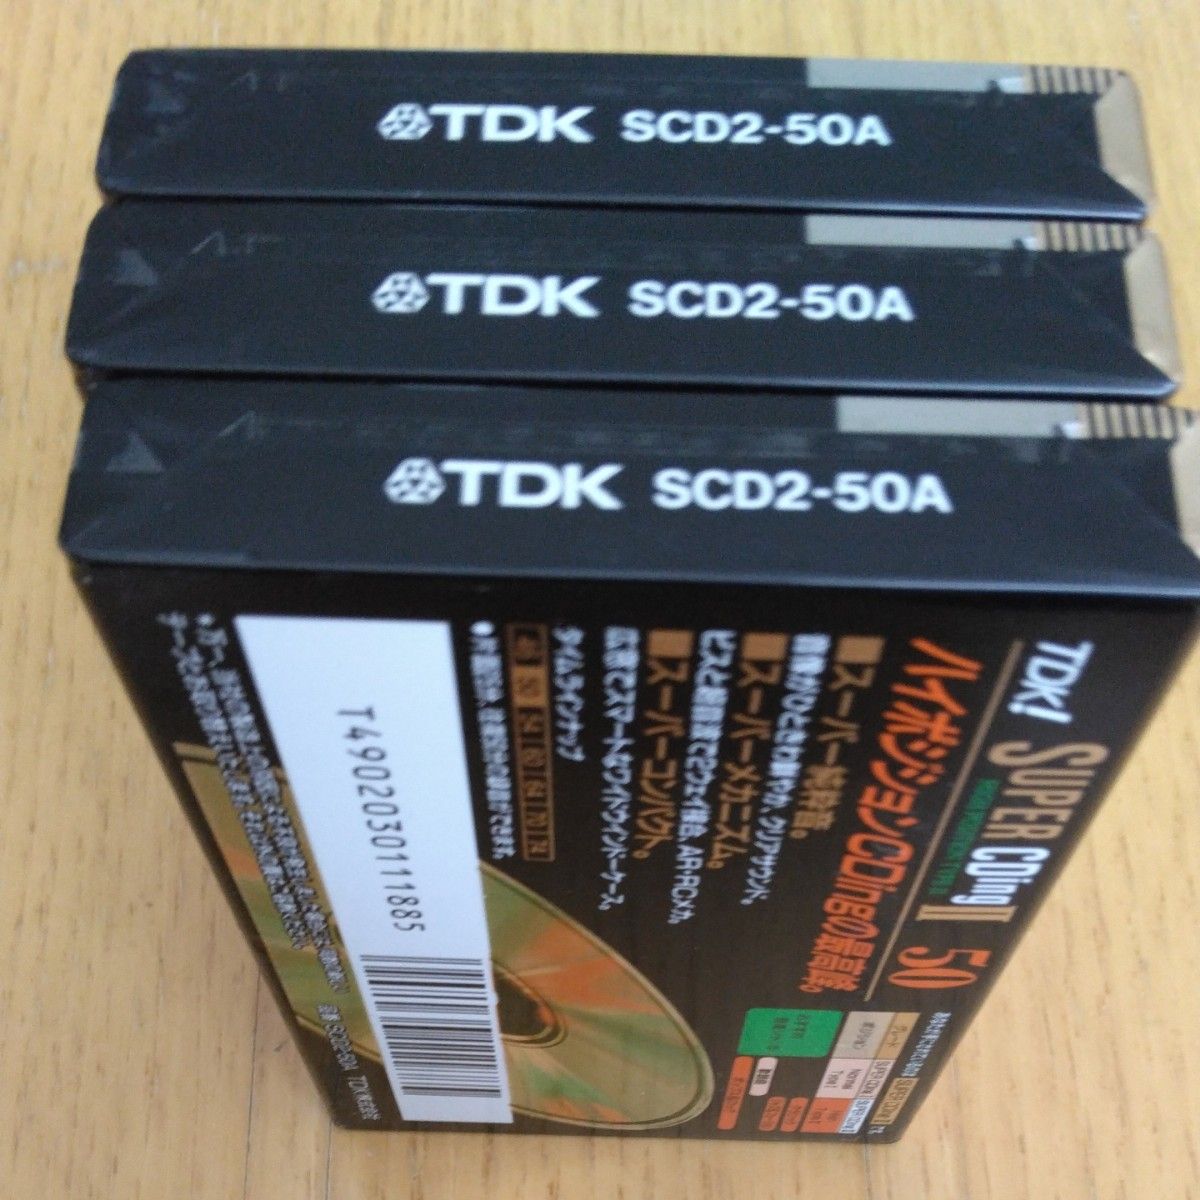 TDK カセットテープ SUPERCDingⅡ 50      ハイポジ 3本